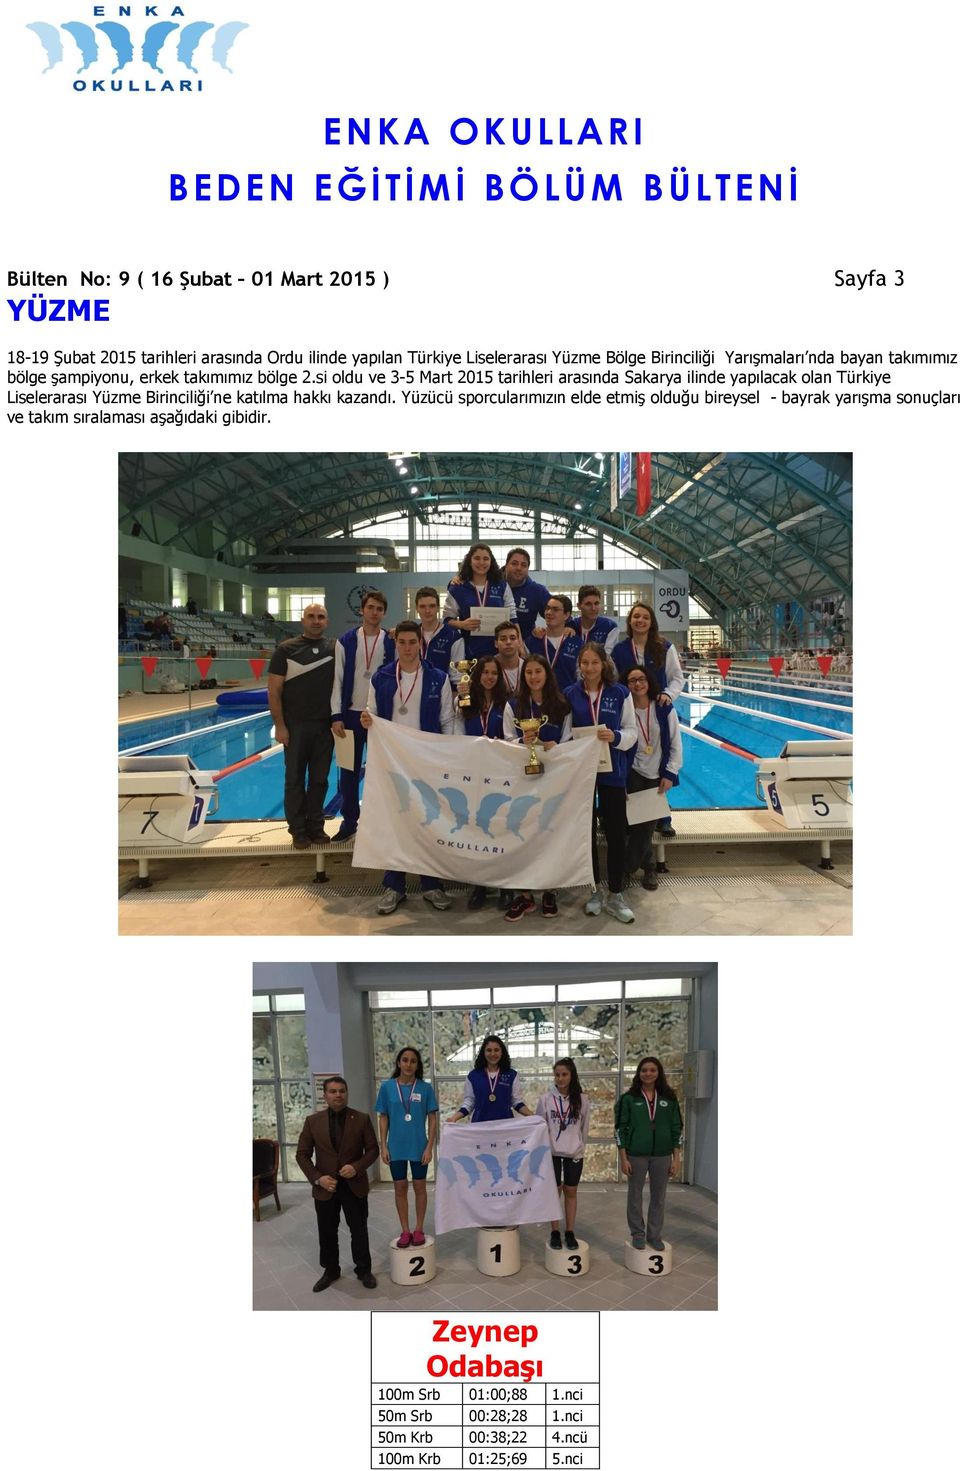 si oldu ve 3-5 Mart 2015 tarihleri arasında Sakarya ilinde yapılacak olan Türkiye Liselerarası Yüzme Birinciliği ne katılma hakkı kazandı.